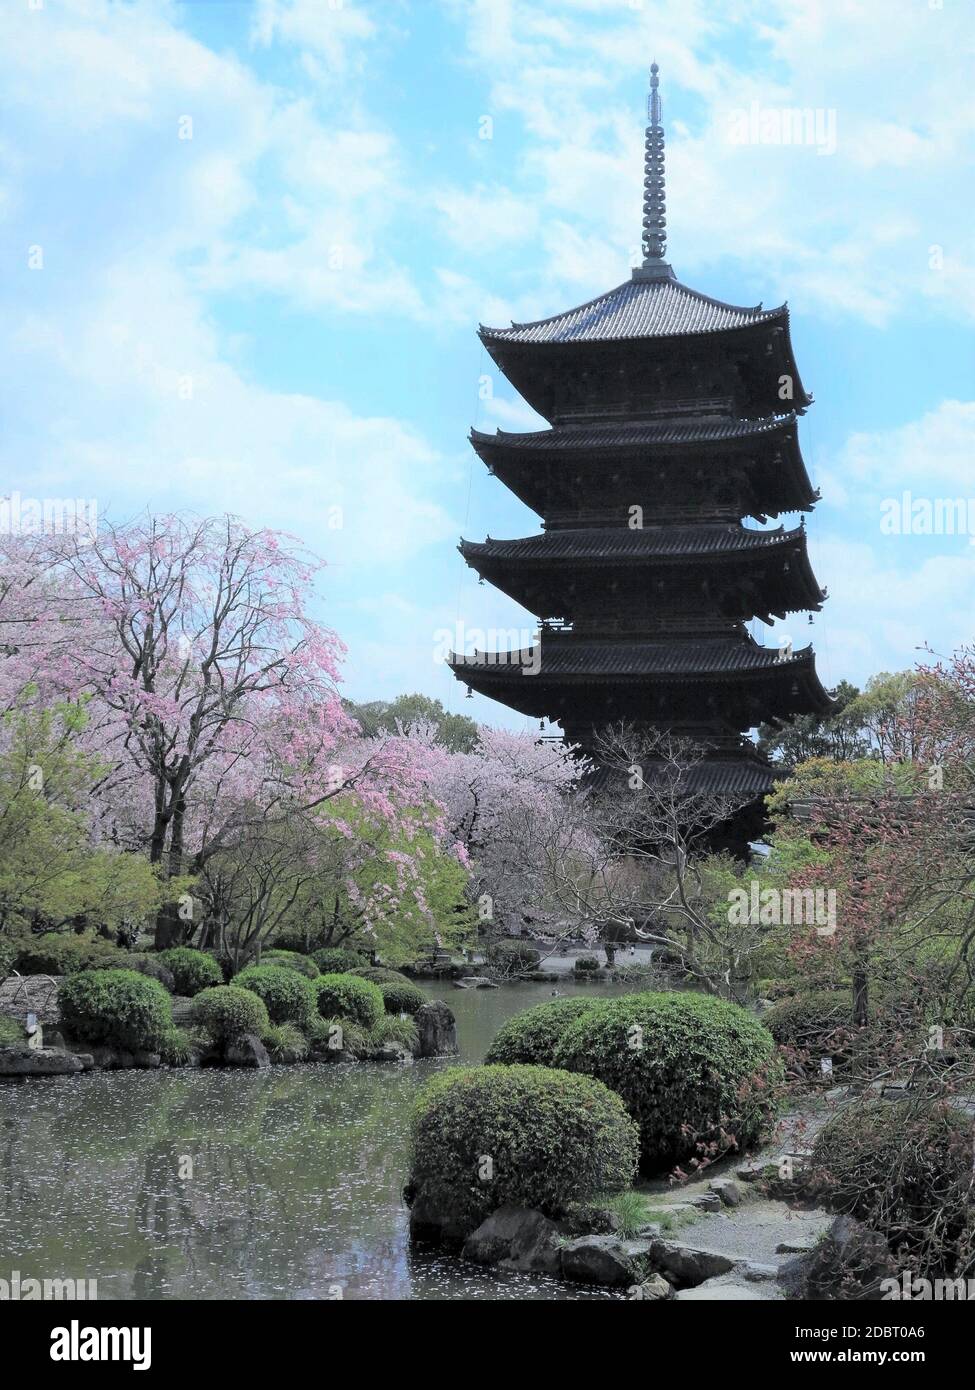 Toji-Tempel, Fünfstöckige Pagode, Kyoto, Japan. Weltkulturerbe. Stockfoto